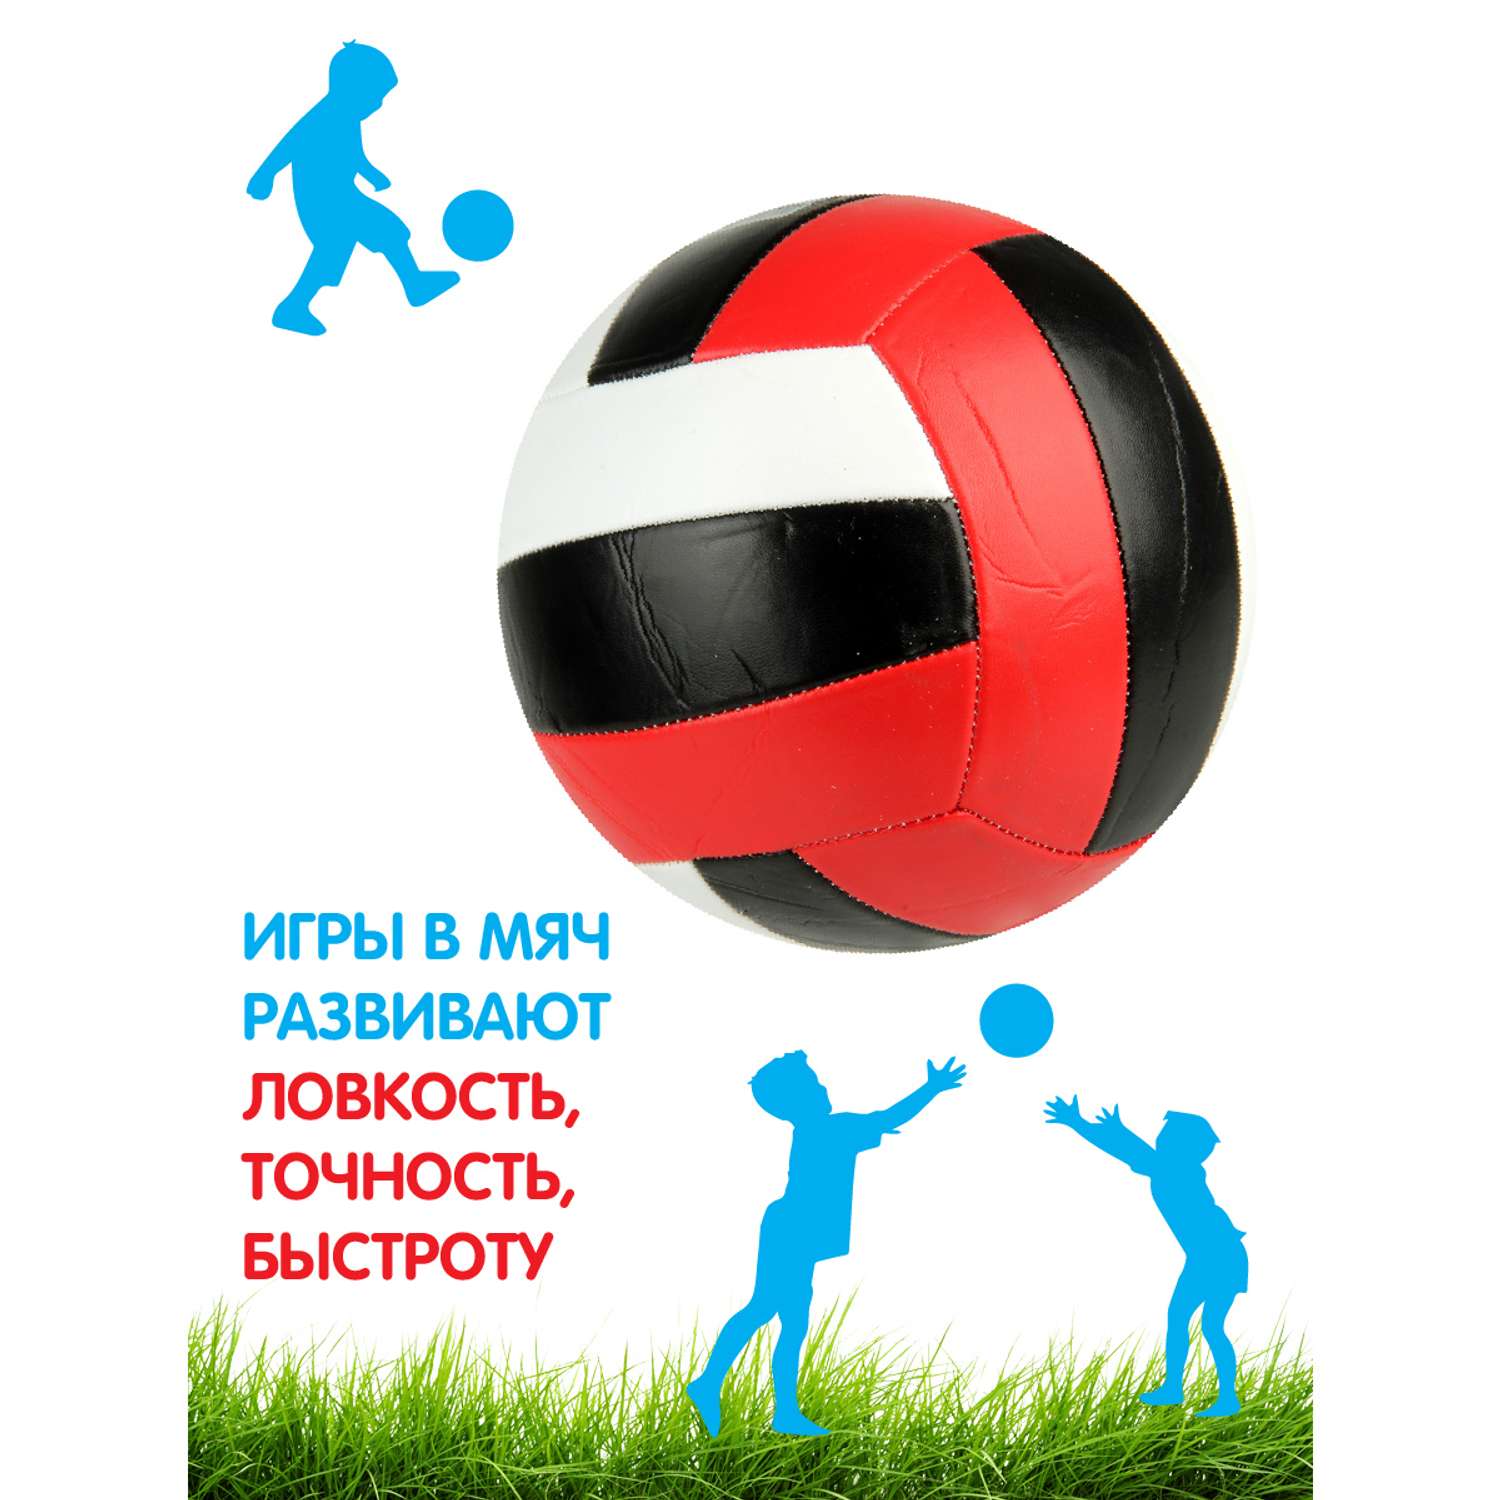 Мяч Veld Co волейбольный 21 см 260г - фото 3